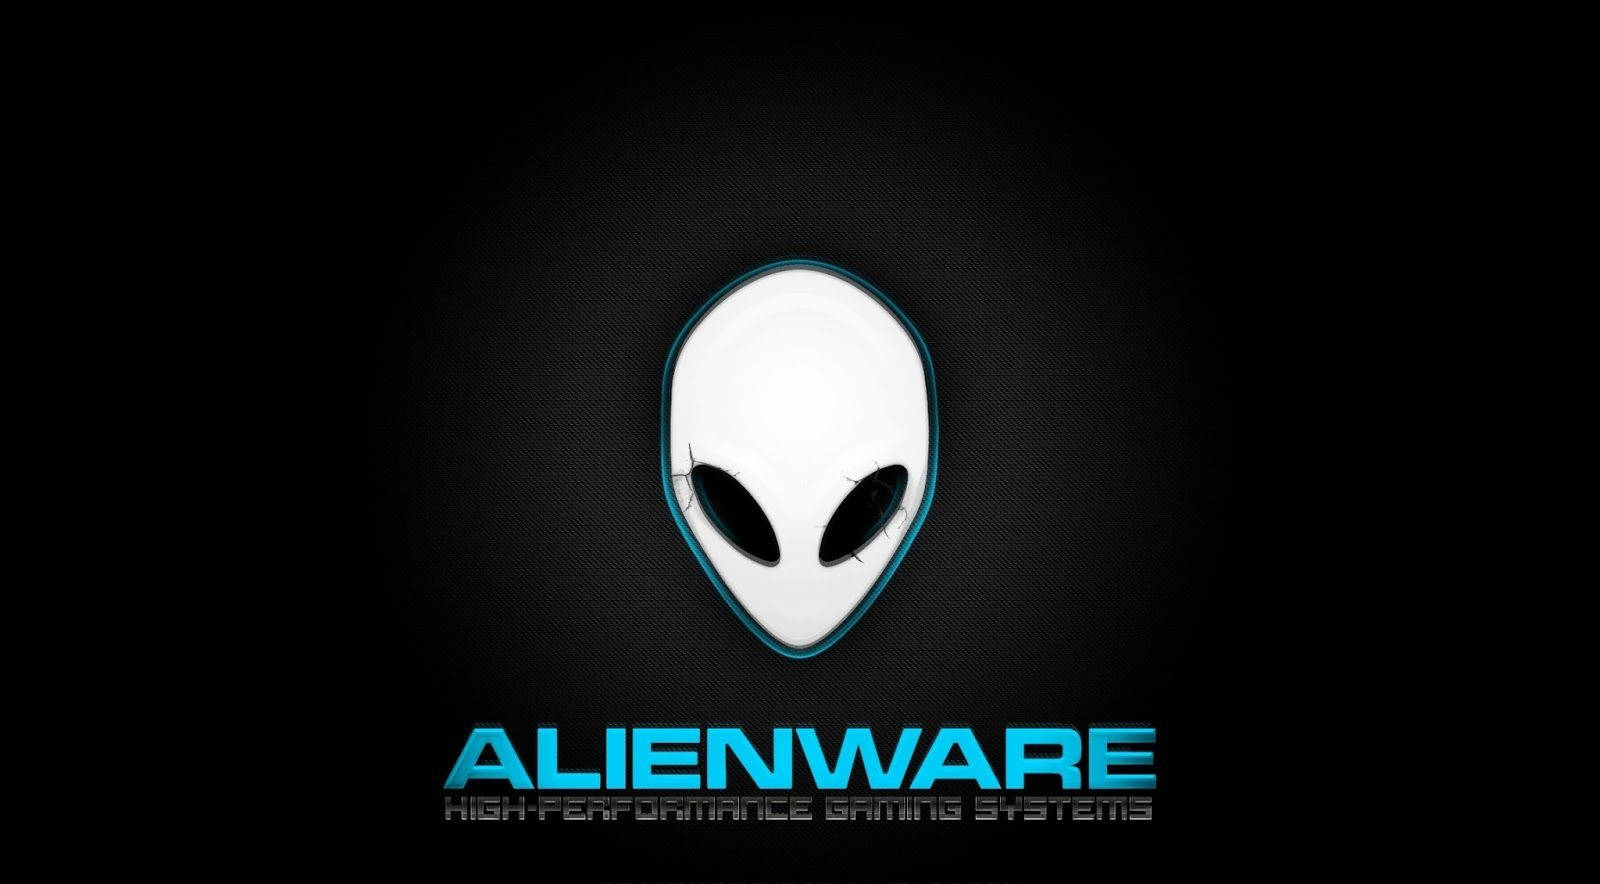 Weißesalienware-logo Und Wordmark Wallpaper